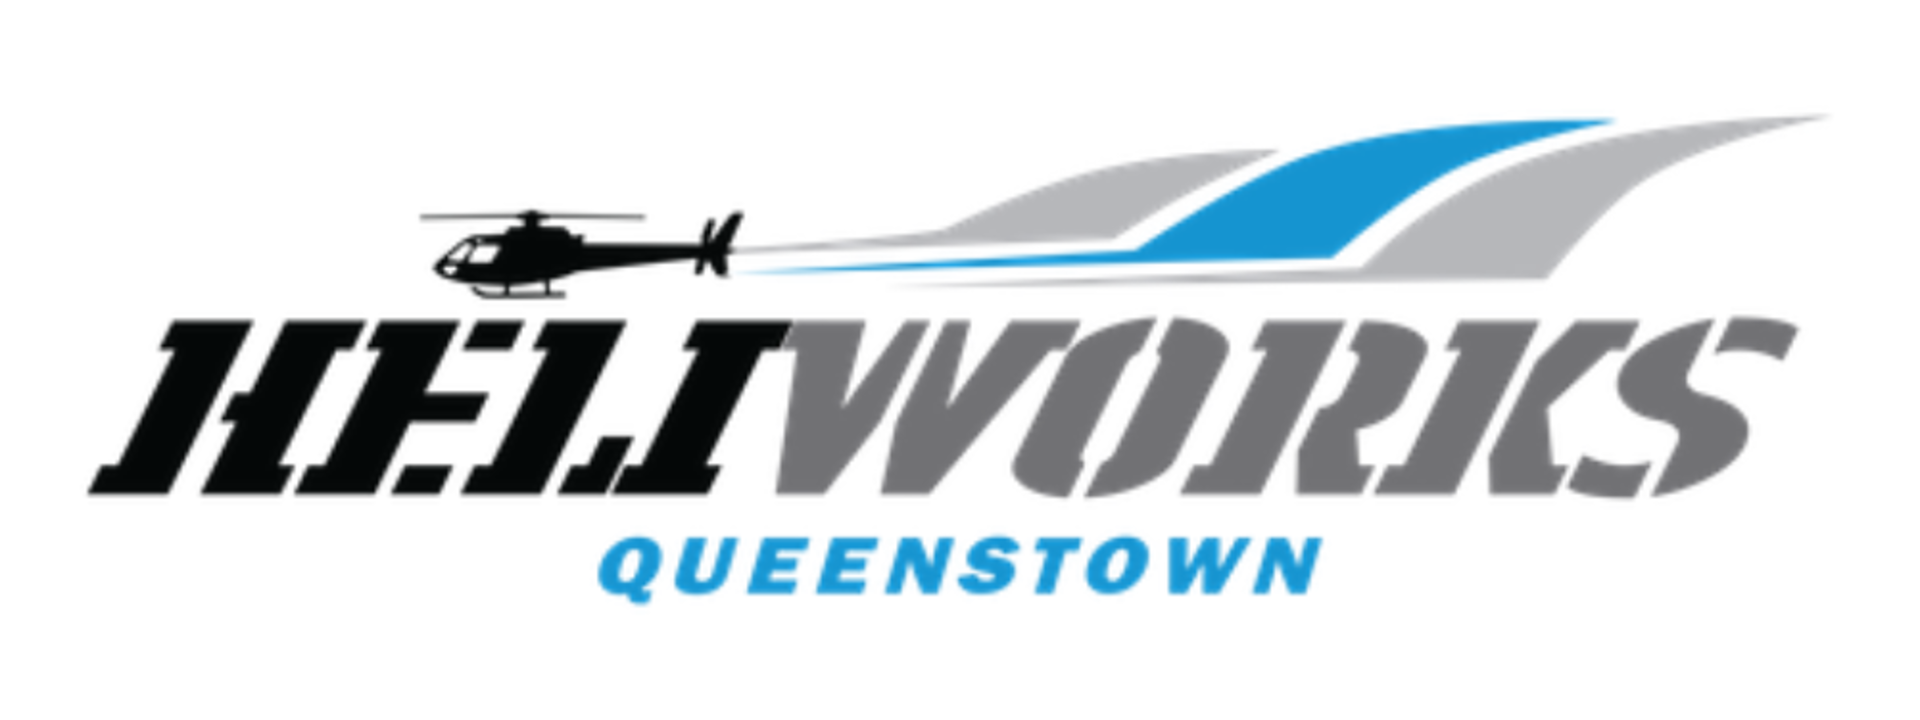 heliworks-logo.png